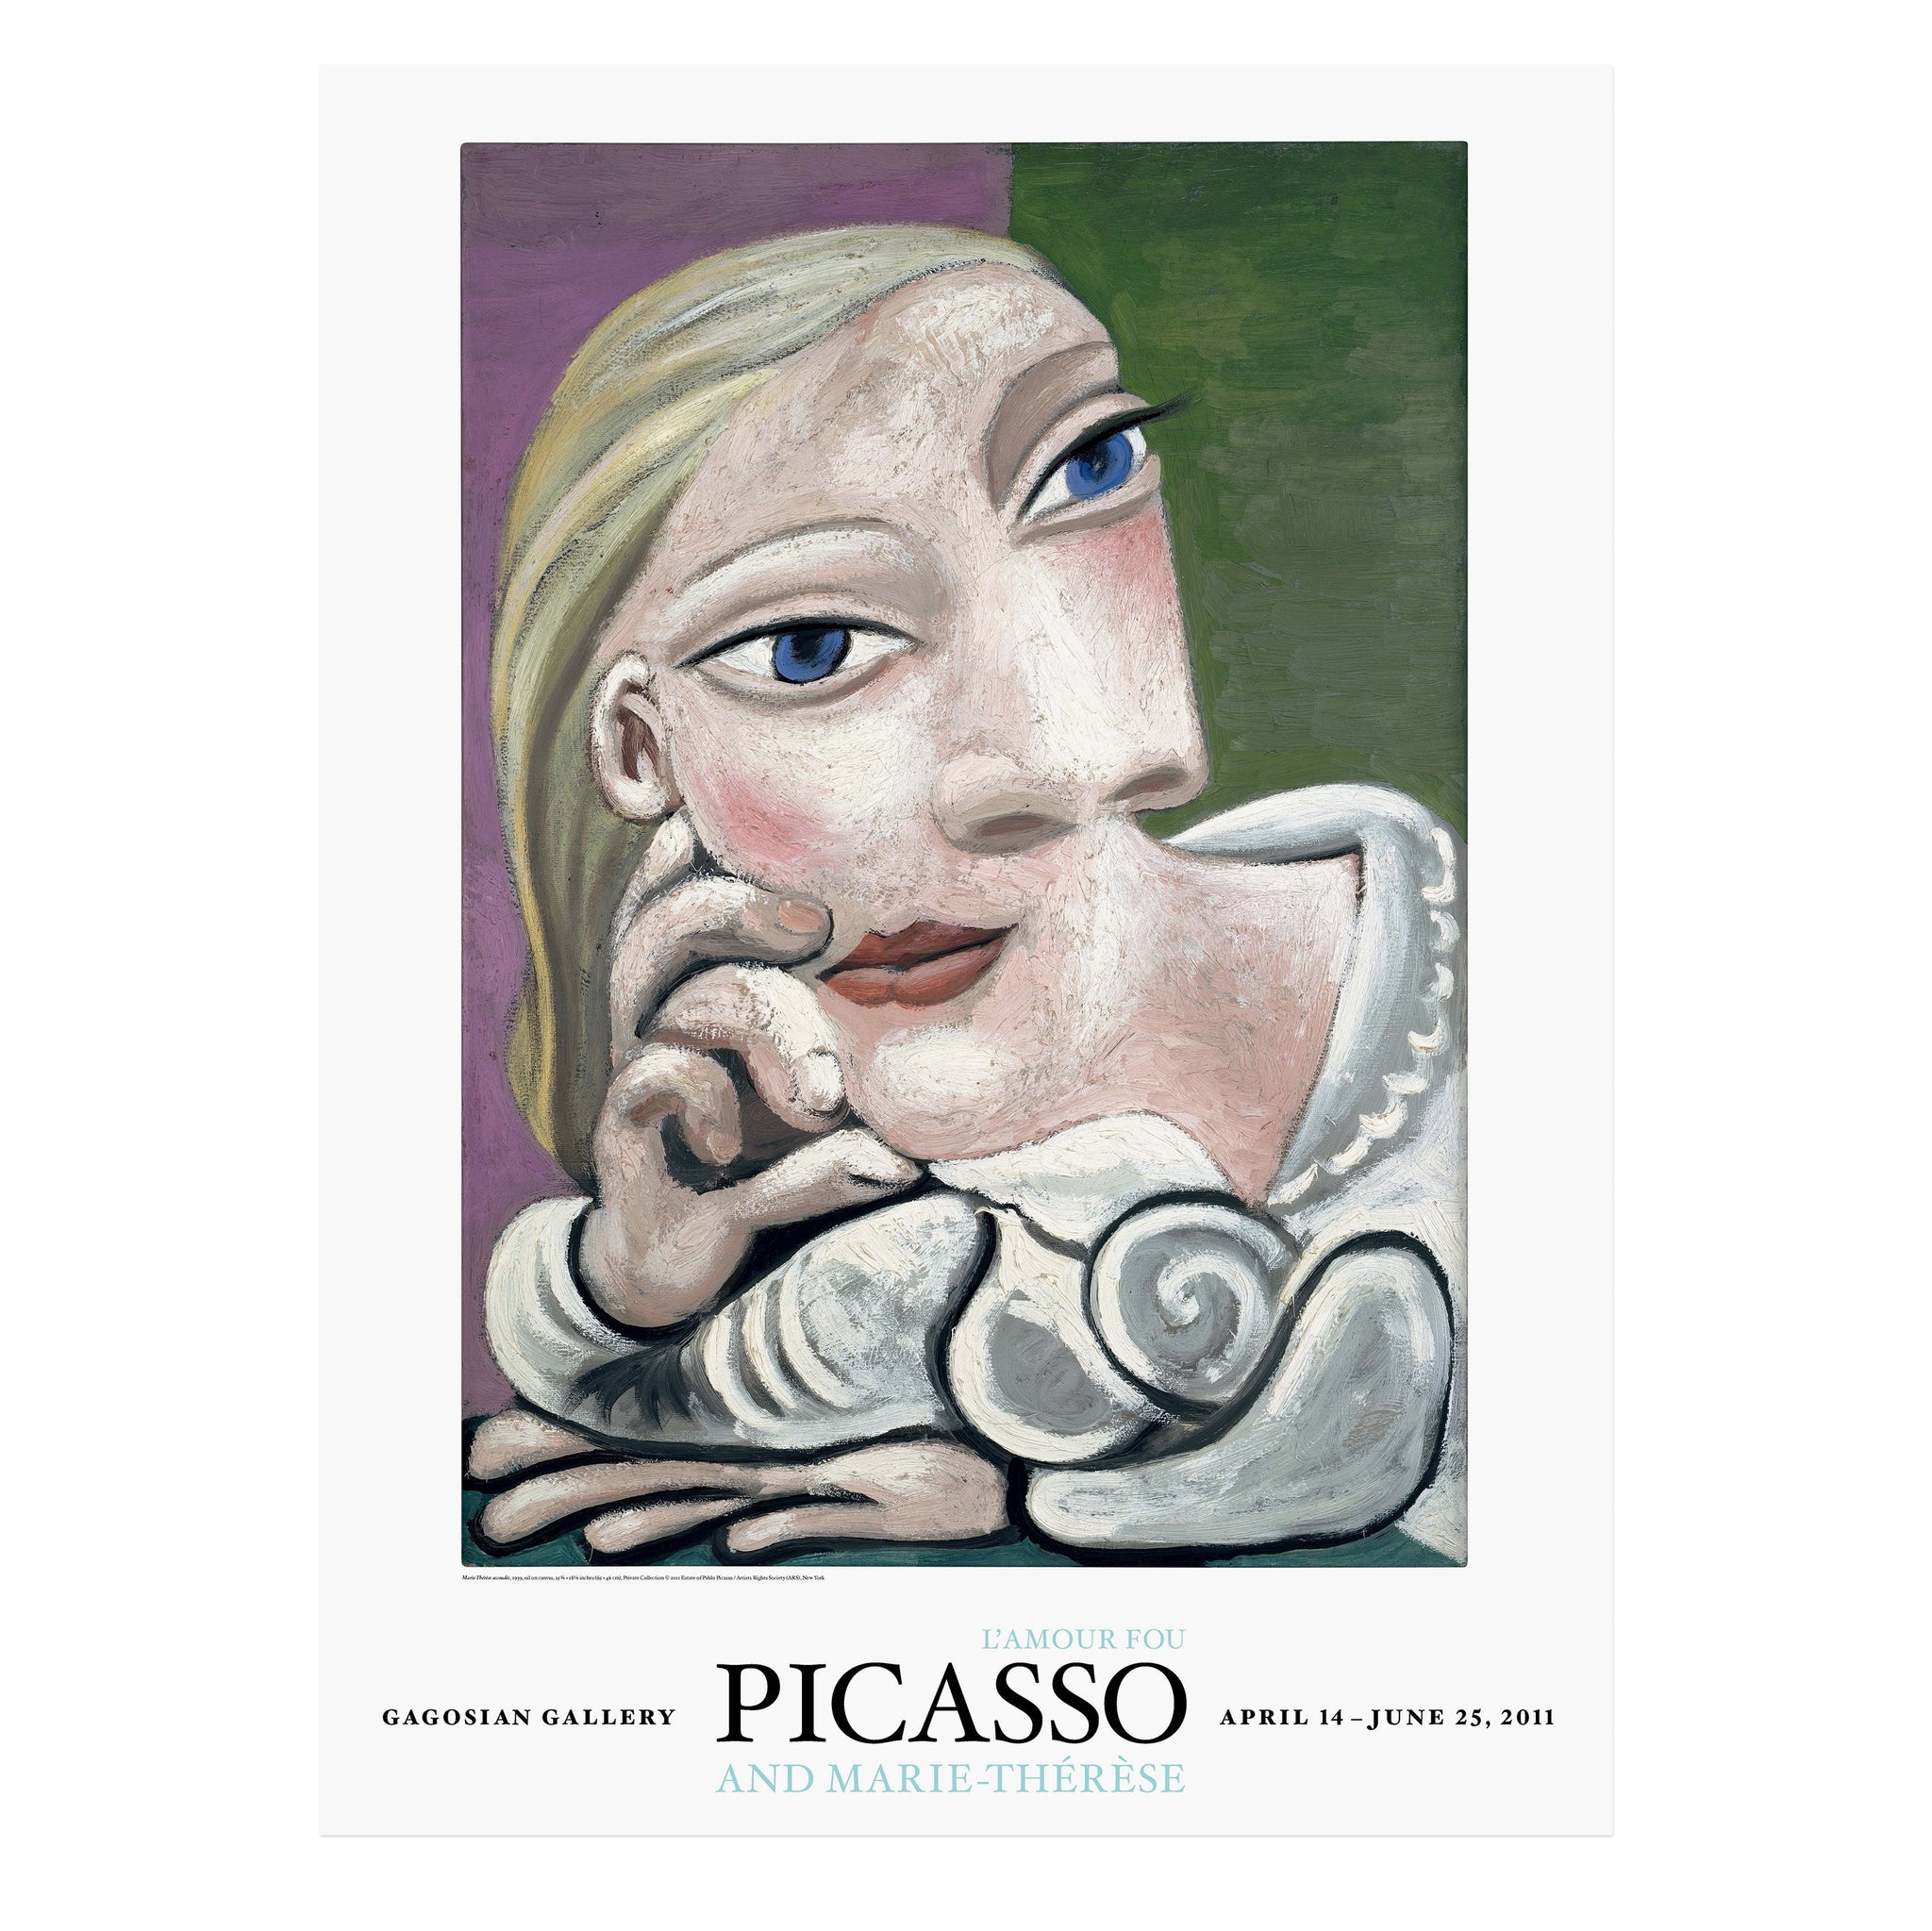 Picasso and Marie-Thérèse: L’amour fou poster featuring Marie-Thérèse accoudée (1939)